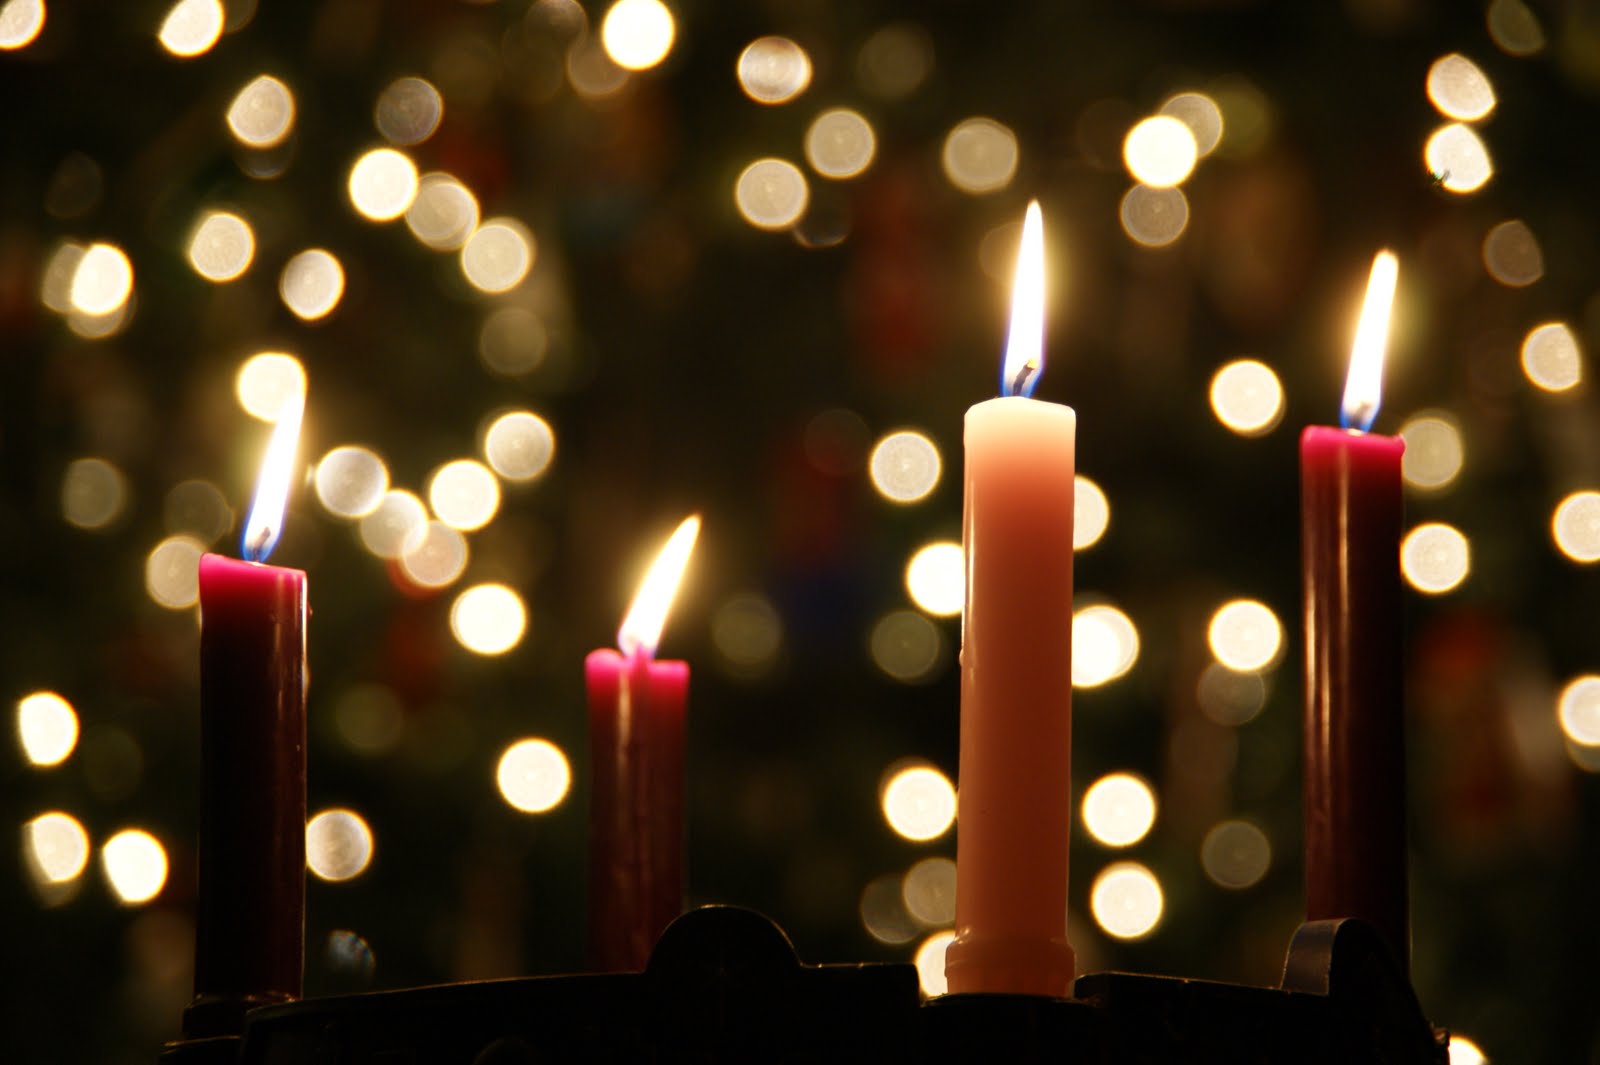 candles and christmas lights